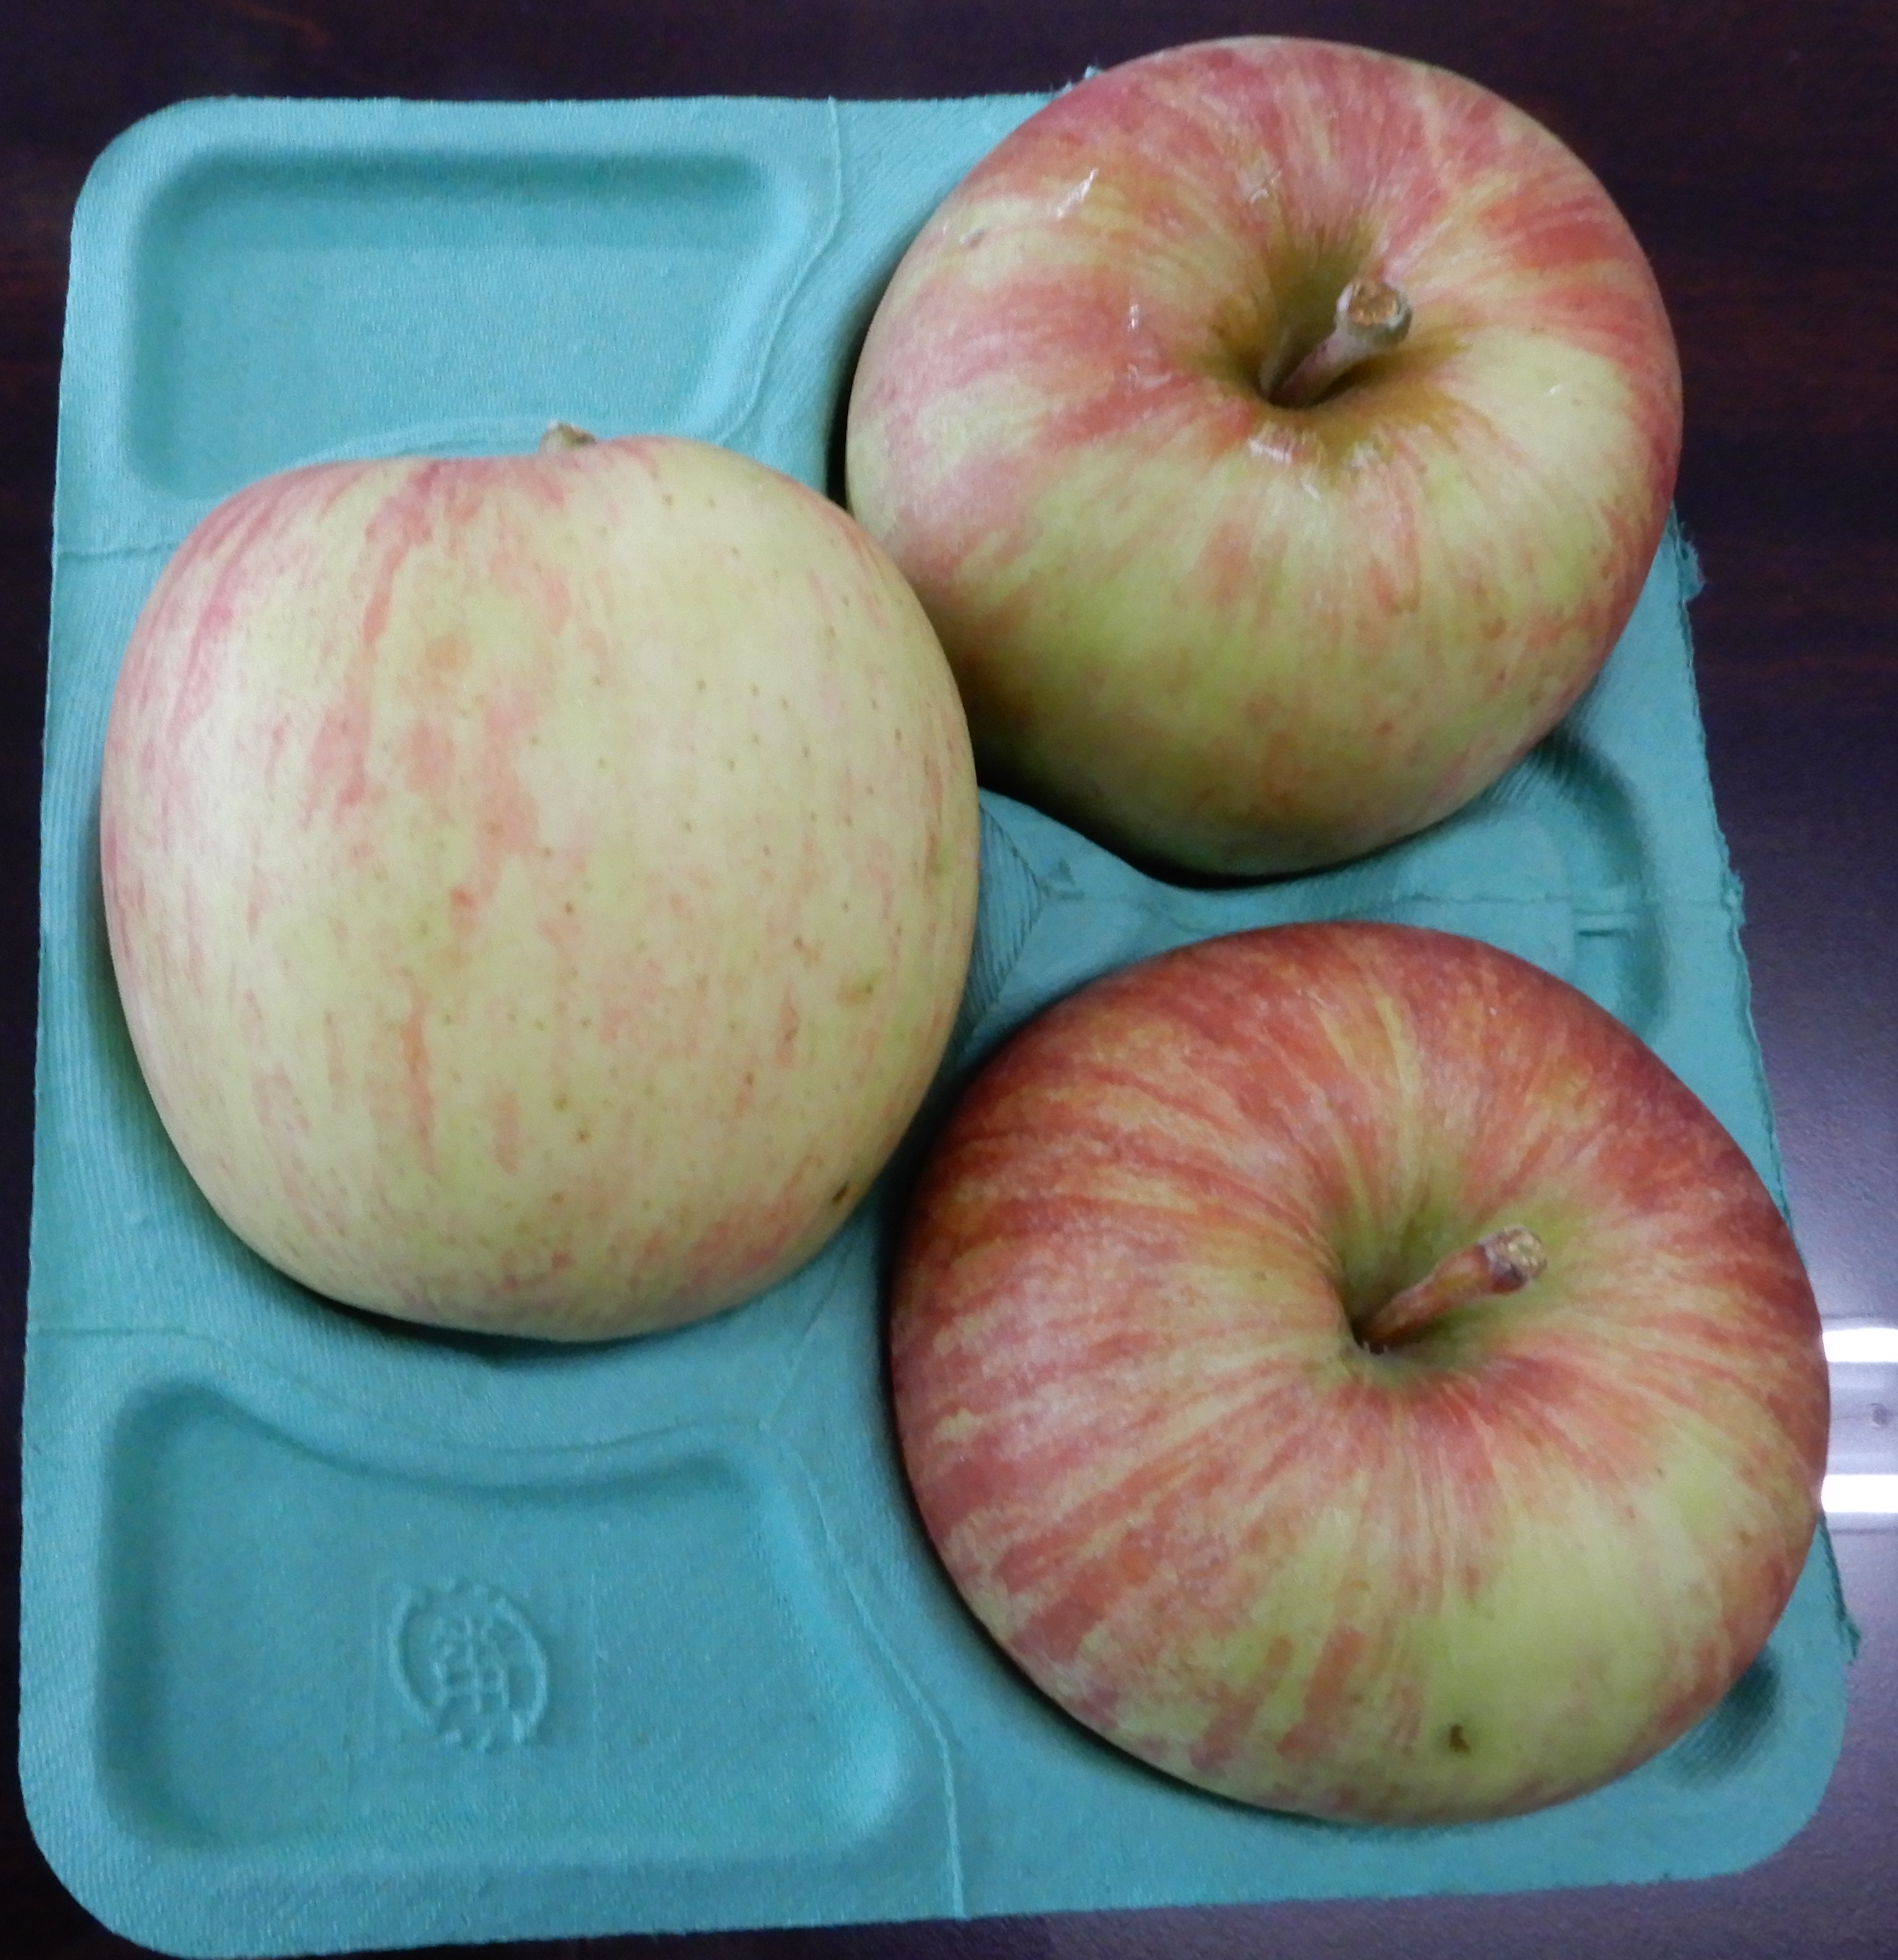 津軽産直組合の出荷基準（2021） 着色 -  A品 林檎全体の半分程度色がついていないもの。食味に影響がないもの。